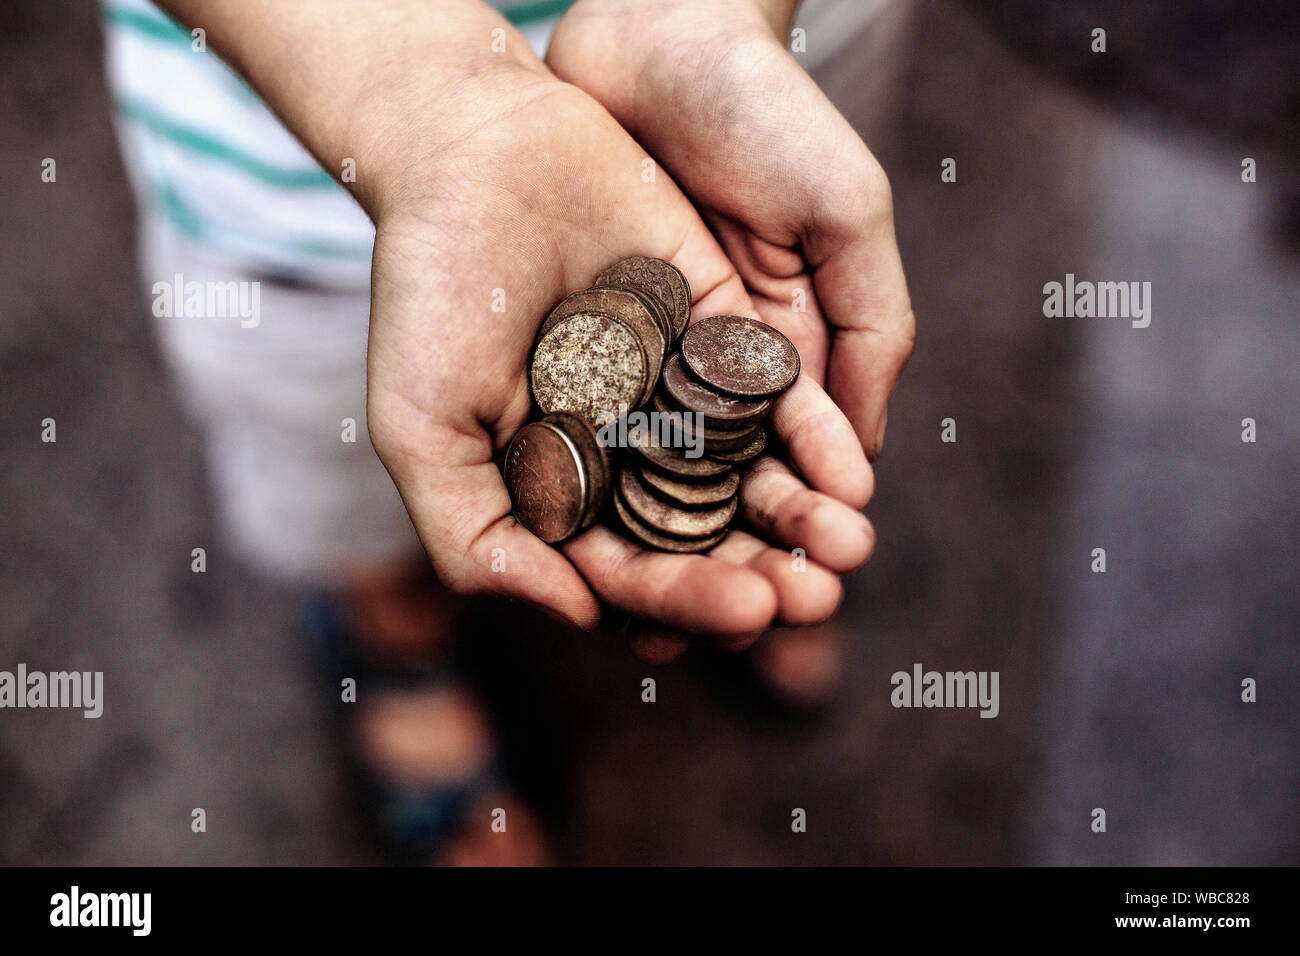 Niño sosteniendo puñado de monedas descubiertas con un detector de metales. Foto de stock